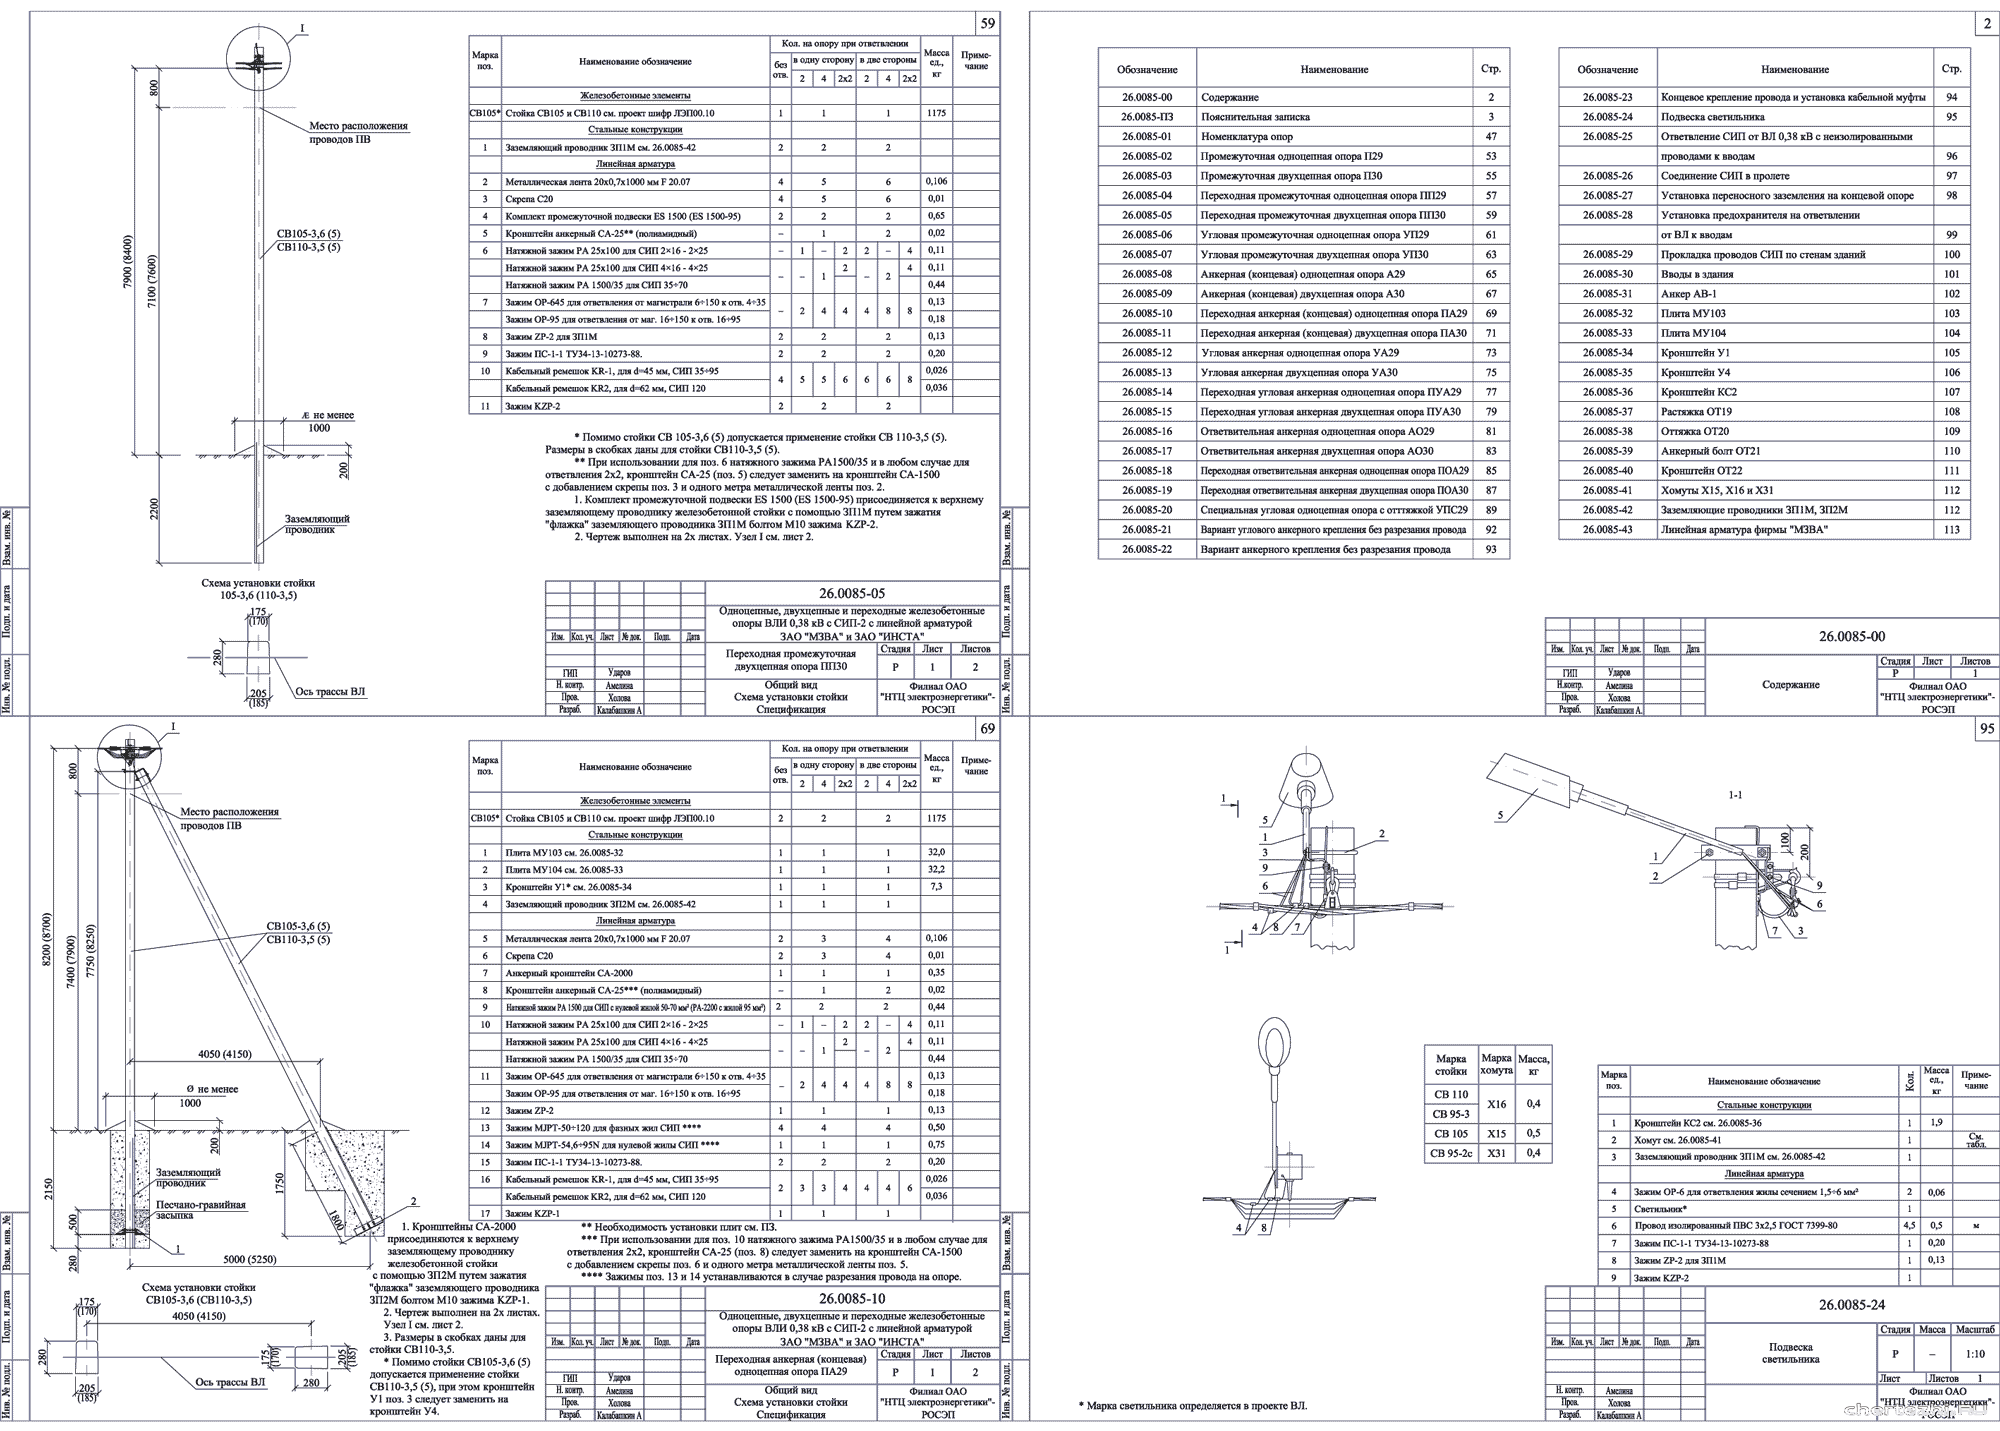 Монтаж разрядников рдип-10 и рмк-20 на влз-6-10кв. габариты и расстояния.